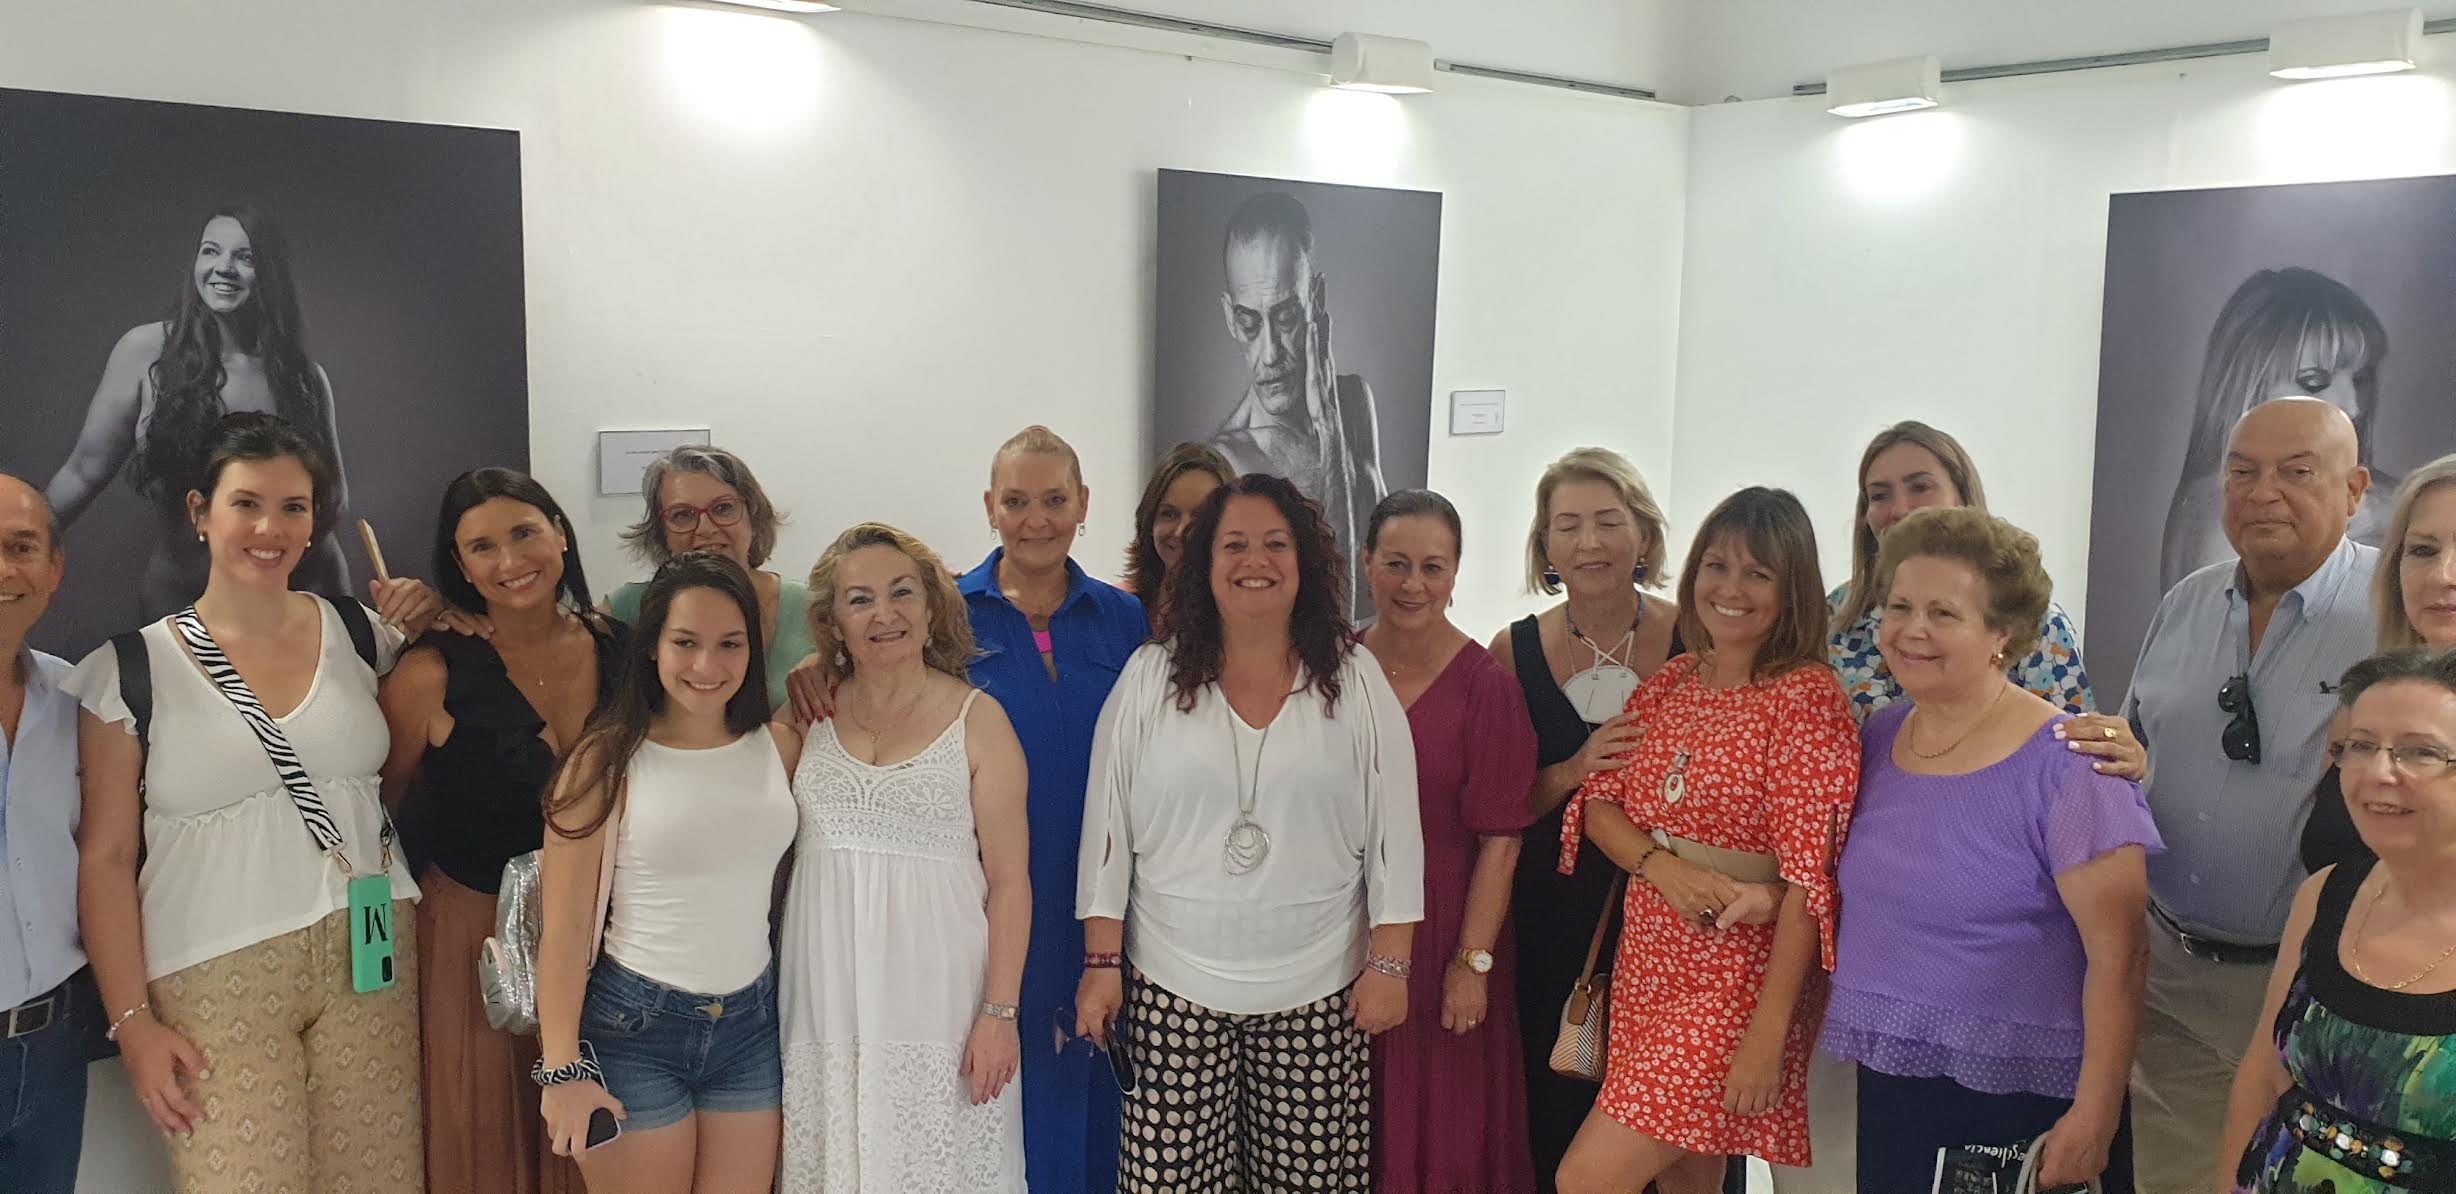 El Centro Cívico Las Columnas de Sevilla expone la muestra ‘Resilencia’ sobre supervivientes del cáncer.